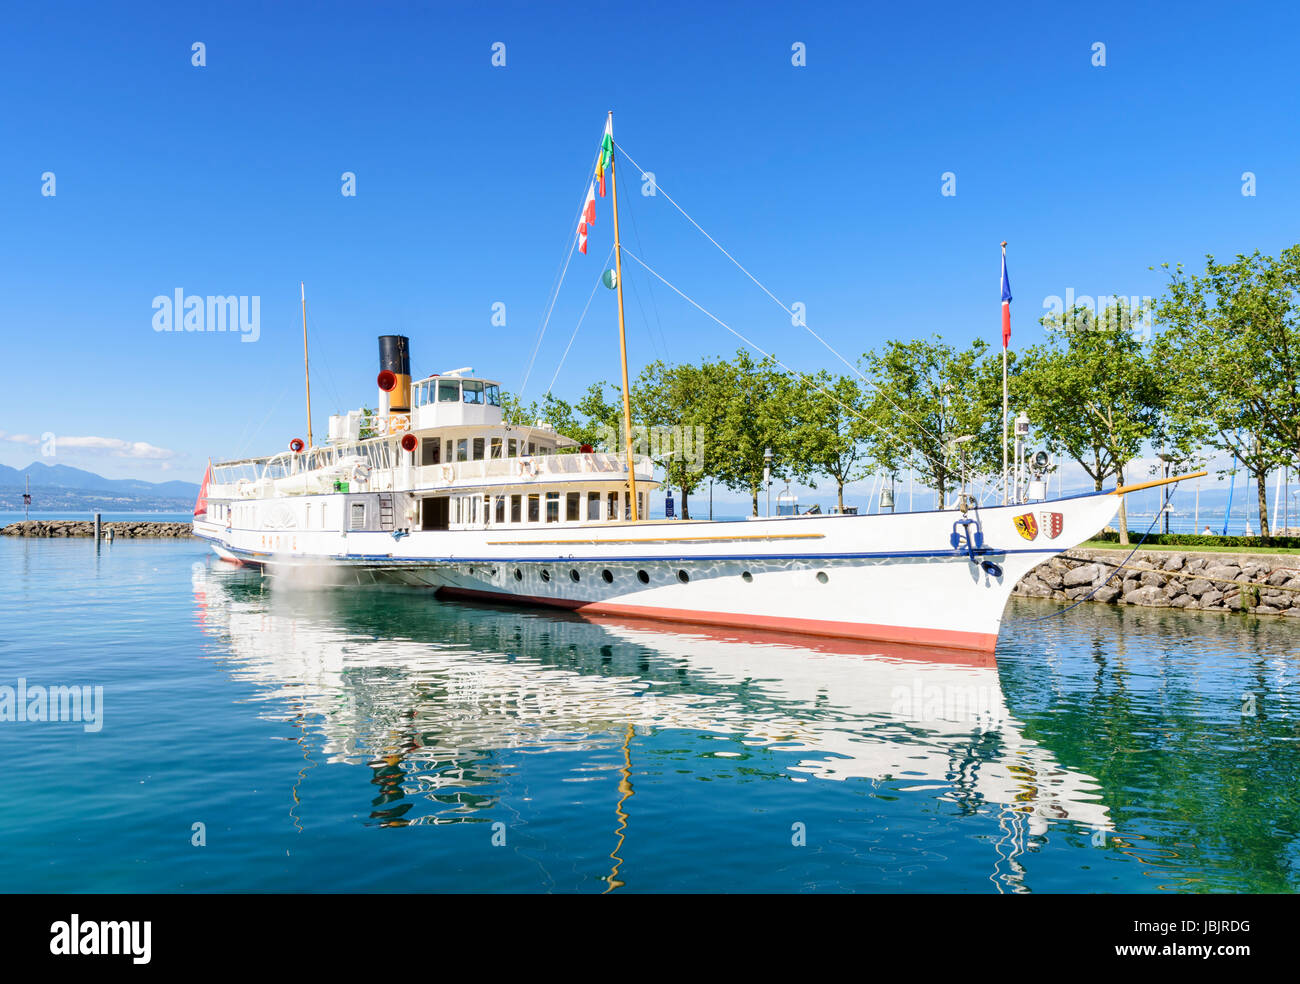 CGN Rhone à aubes bateau amarré dans le port d'Ouchy, Lausanne, Suisse Banque D'Images